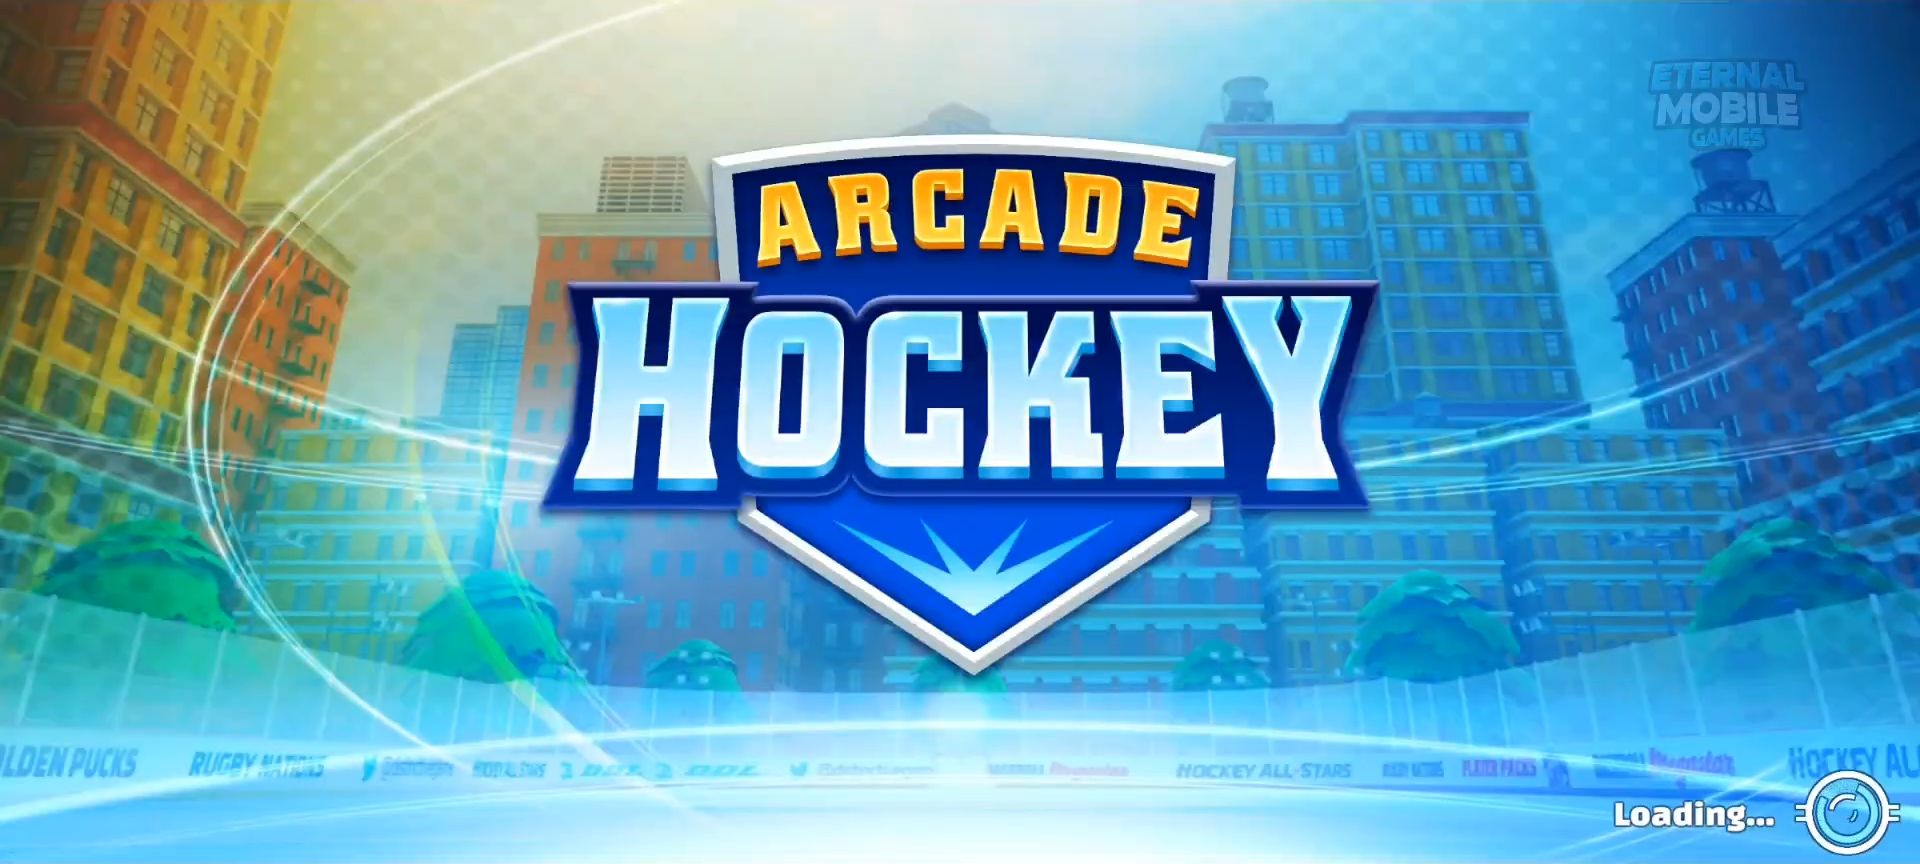 Arcade Hockey 21 スクリーンショット1